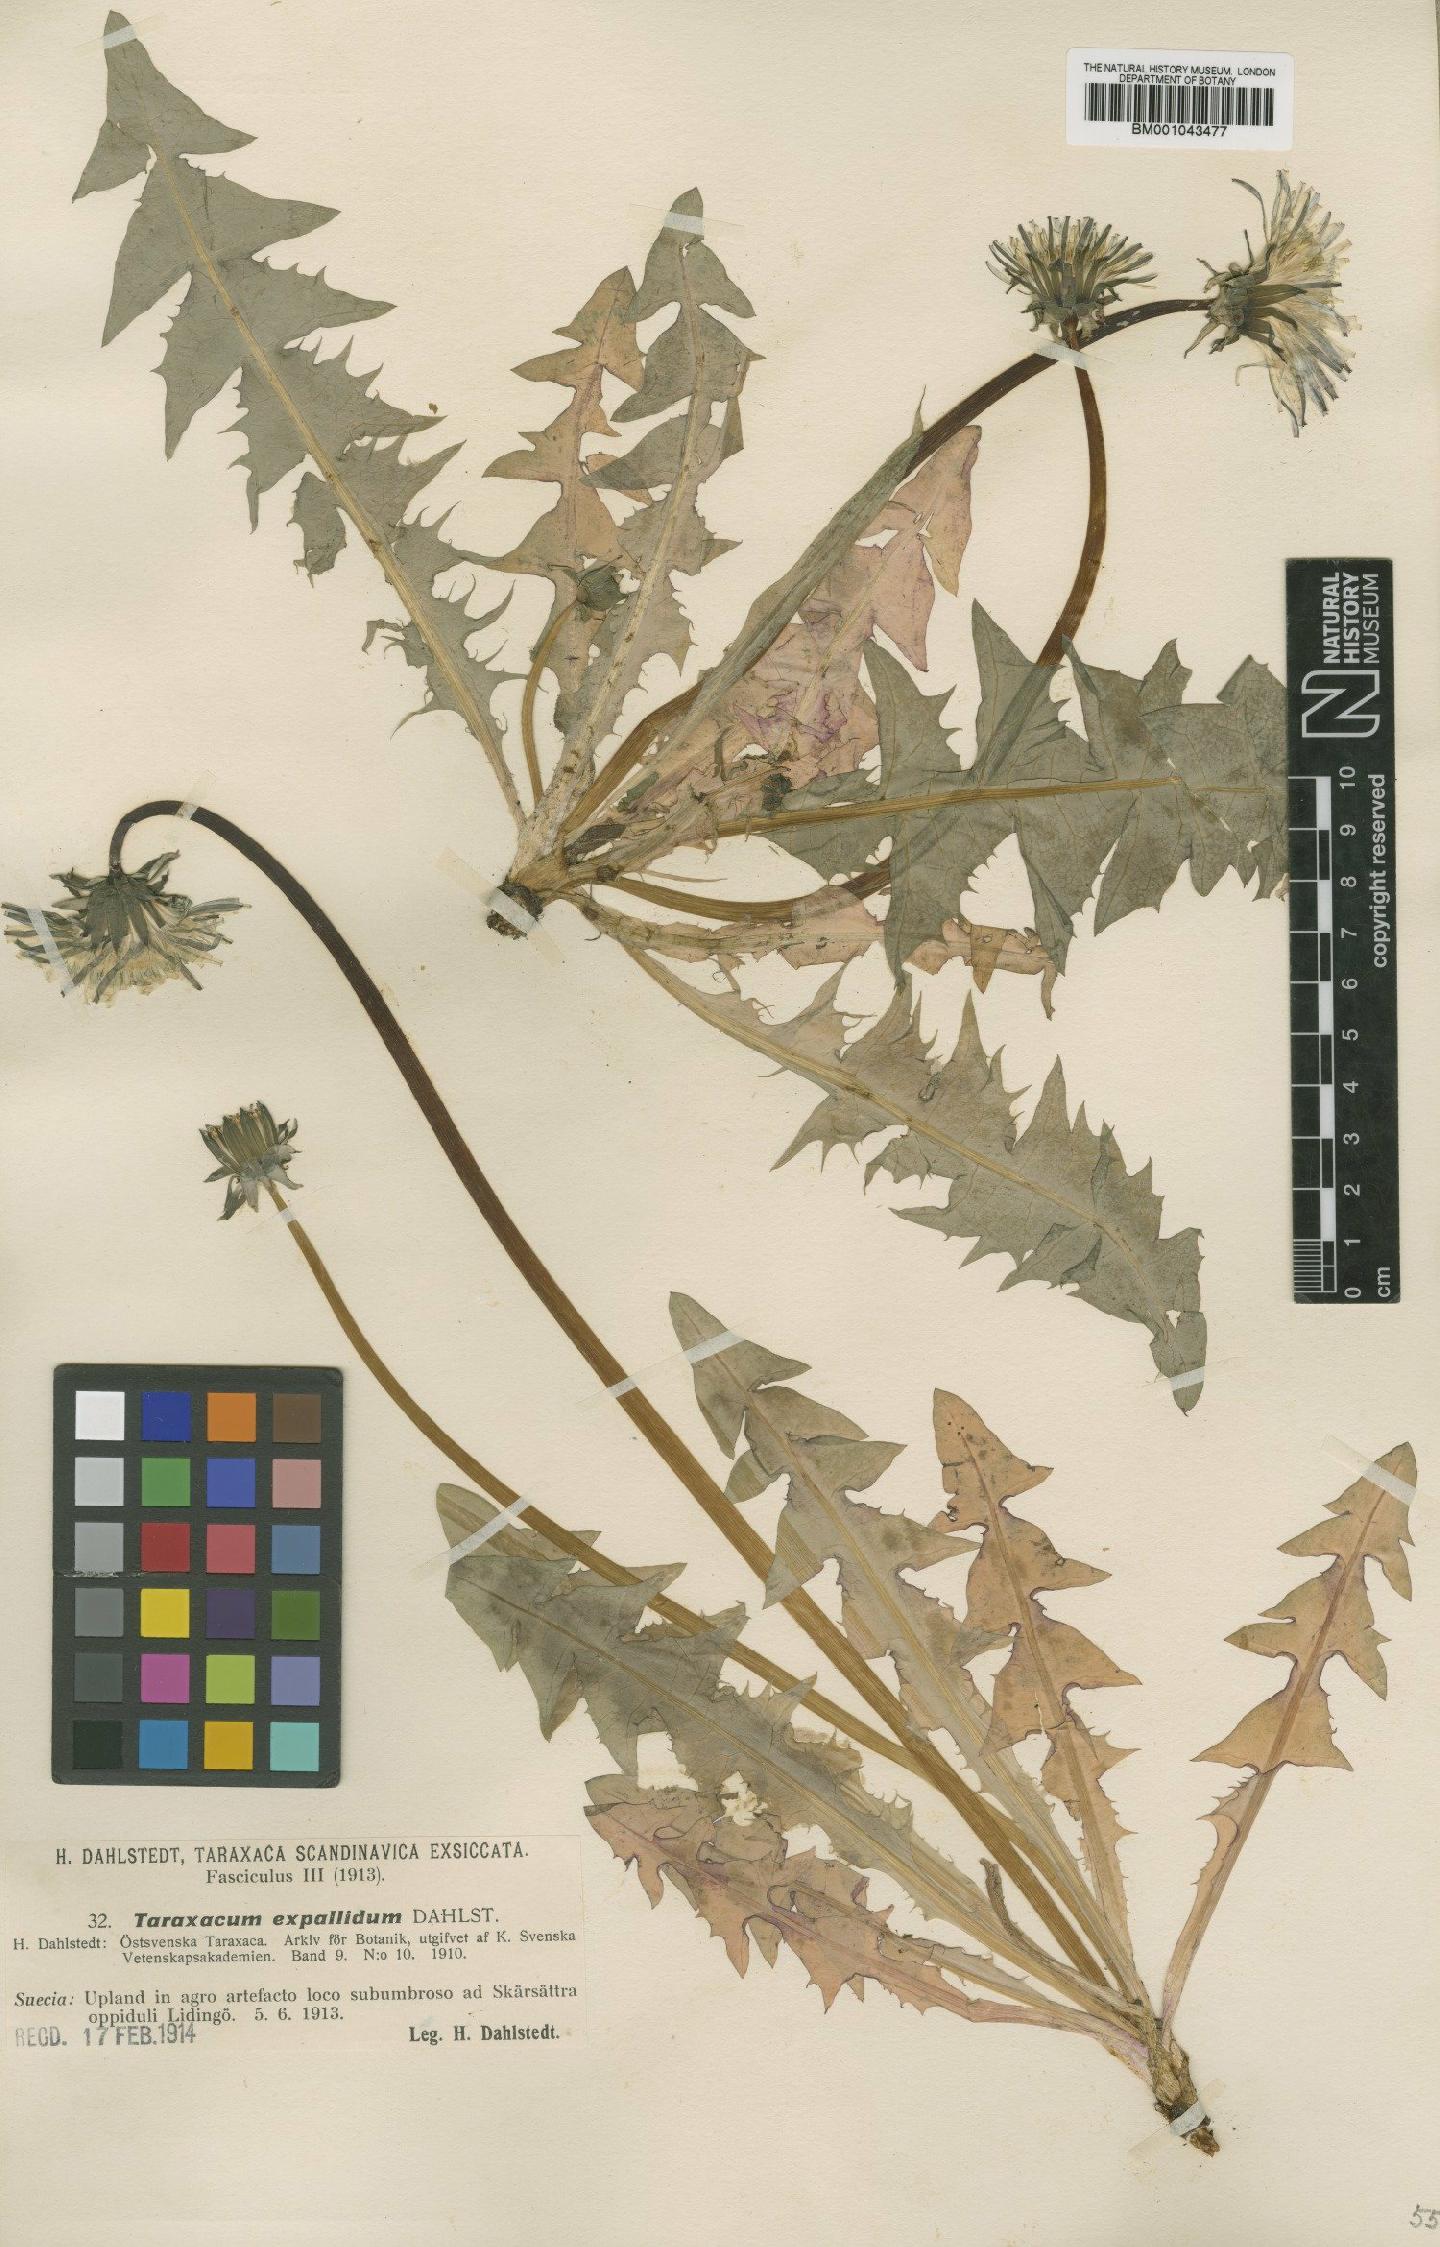 To NHMUK collection (Taraxacum expallidum Dahlst.; Type; NHMUK:ecatalogue:1998594)